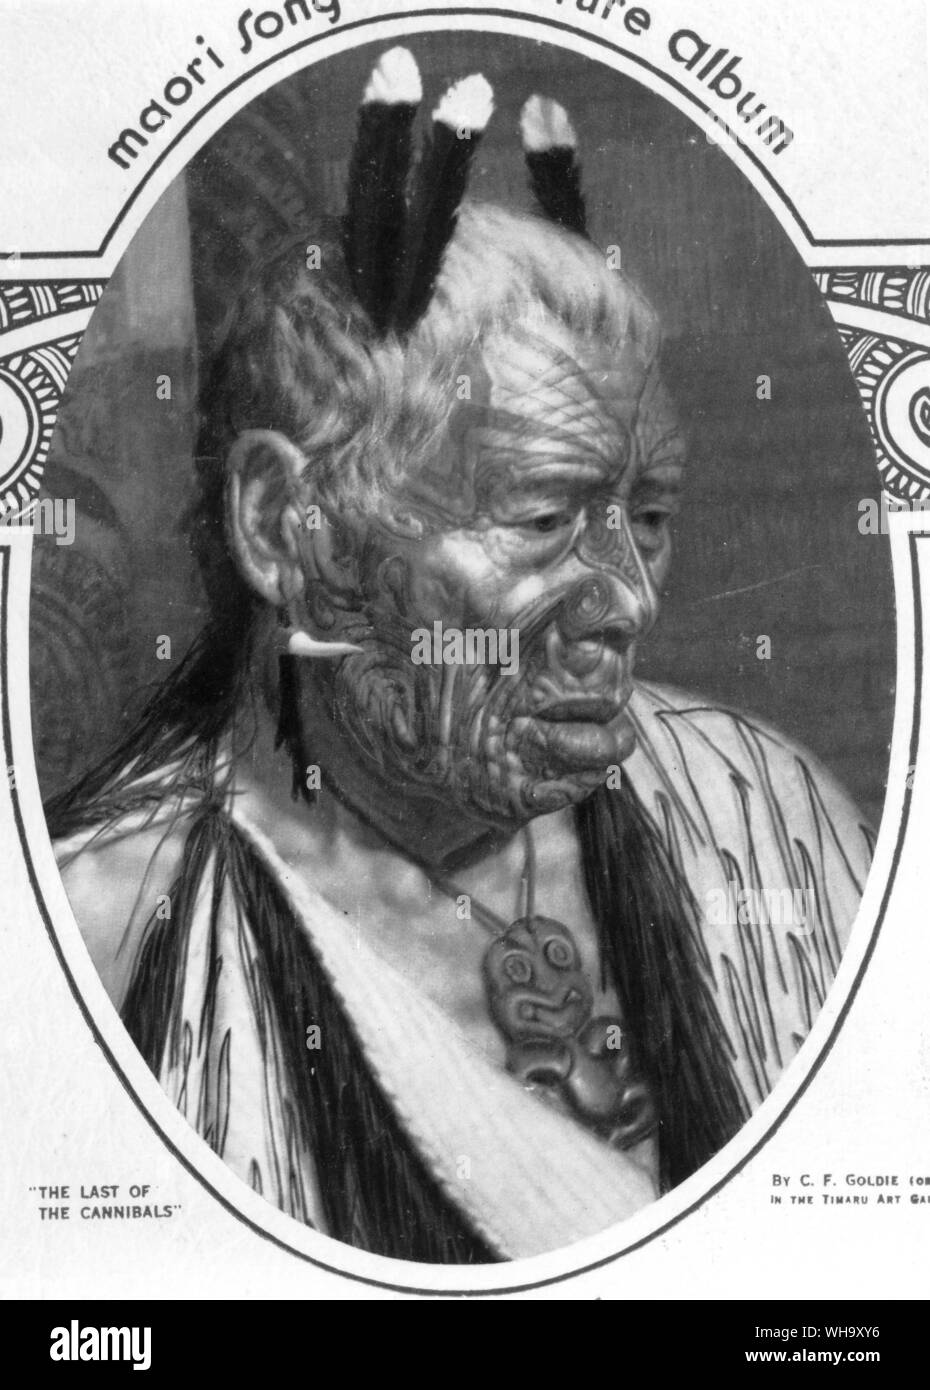 Der Letzte der Kannibalen, ein Ölgemälde (c.1913) Von den großen Neuseeland Künstler C.P. Goldie einer tätowierten Maori chief tragen Hula Federn. Sammlung der Aigantighe Art Gallery. Timaru, Neuseeland Stockfoto